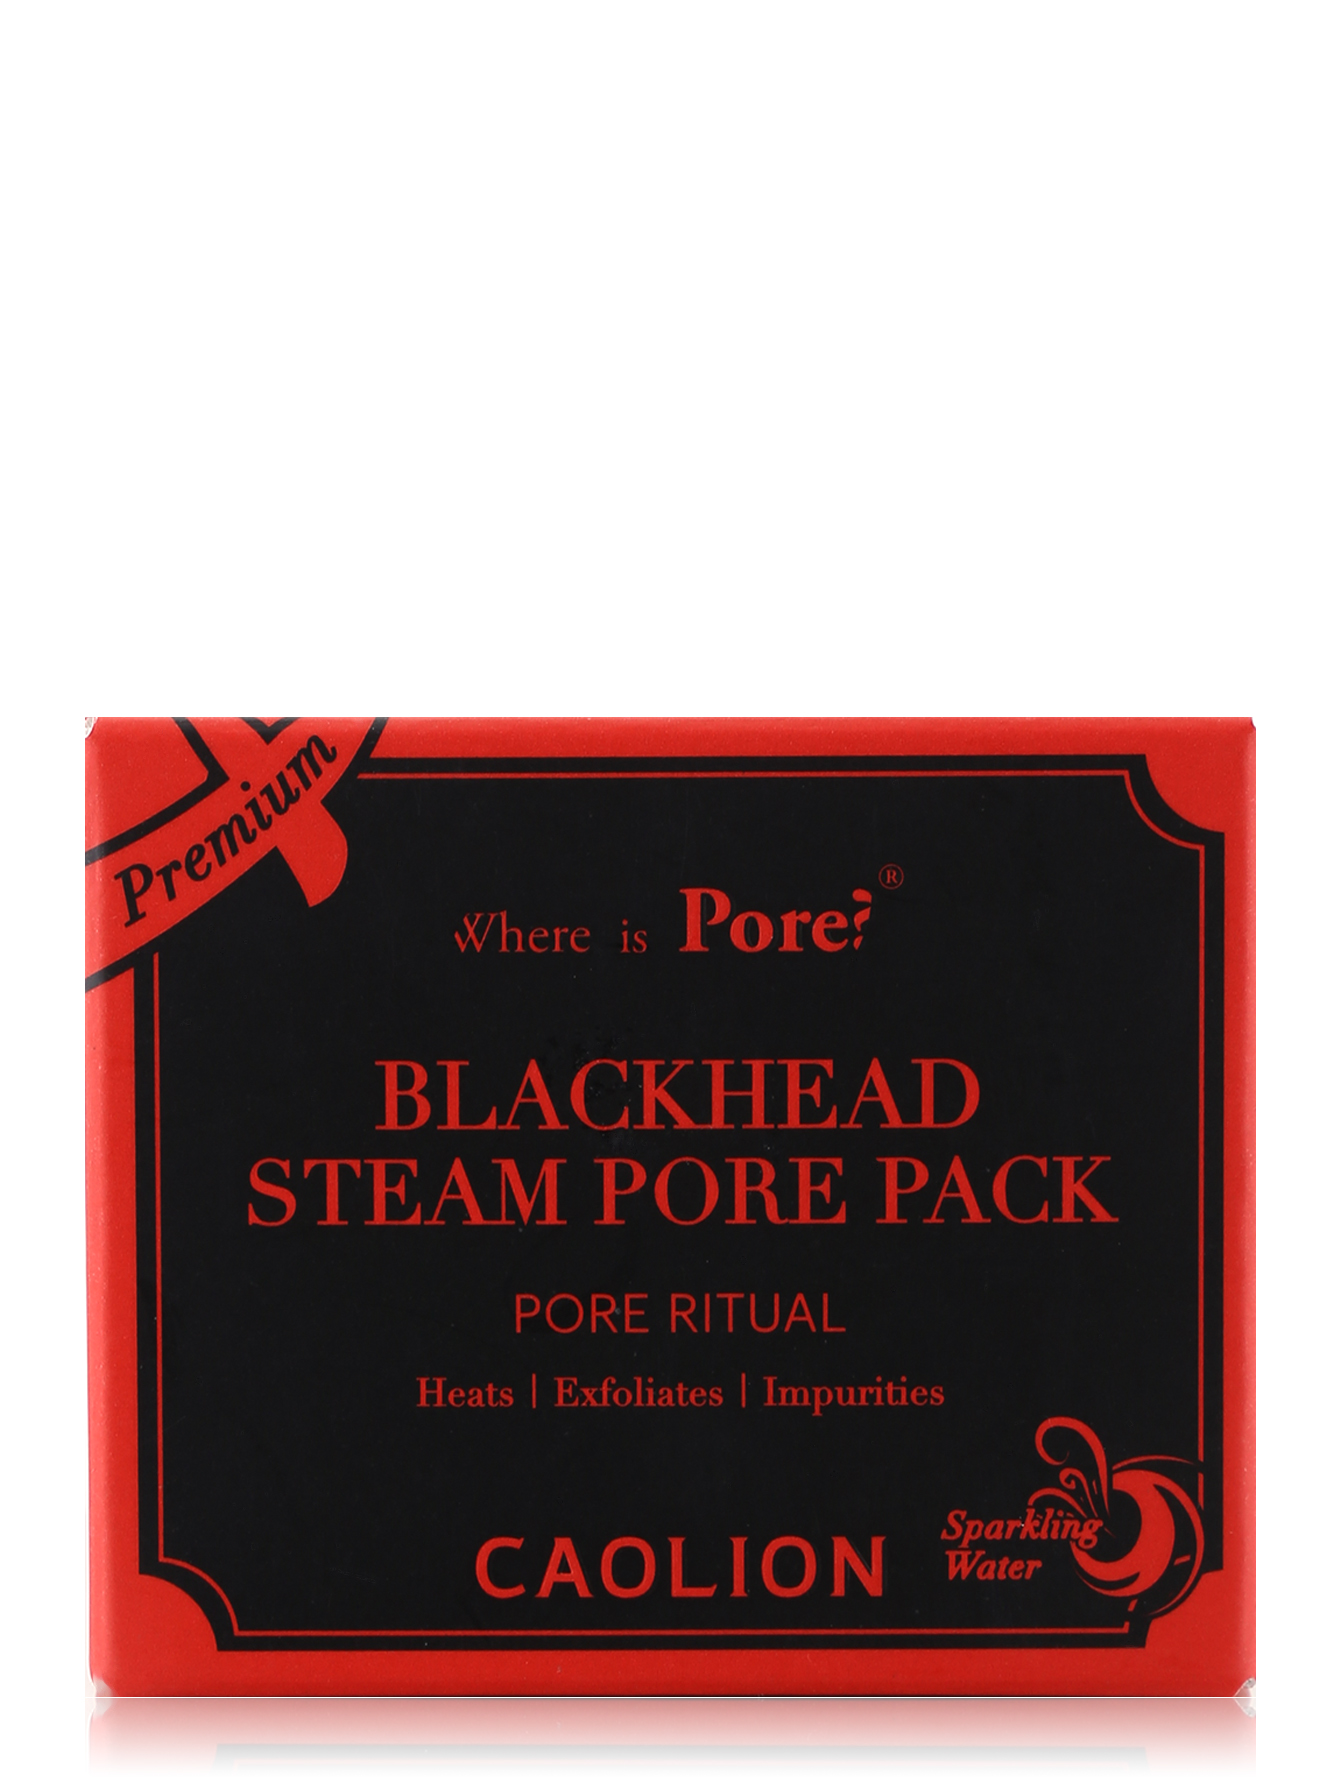  Разогревающая маска для глубокого очищения пор - Blackhead steam pore pack - Общий вид